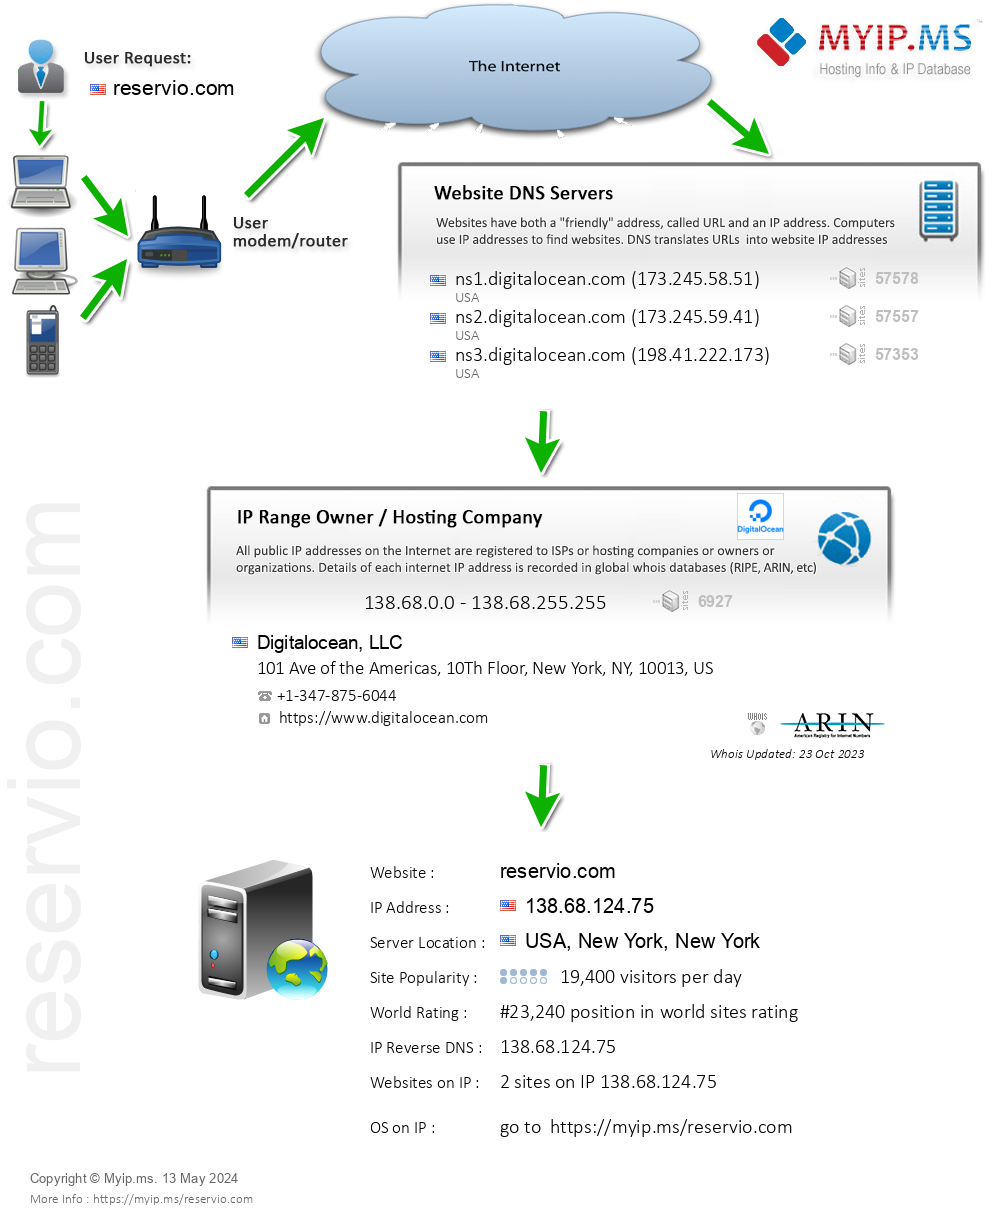 Reservio.com - Website Hosting Visual IP Diagram